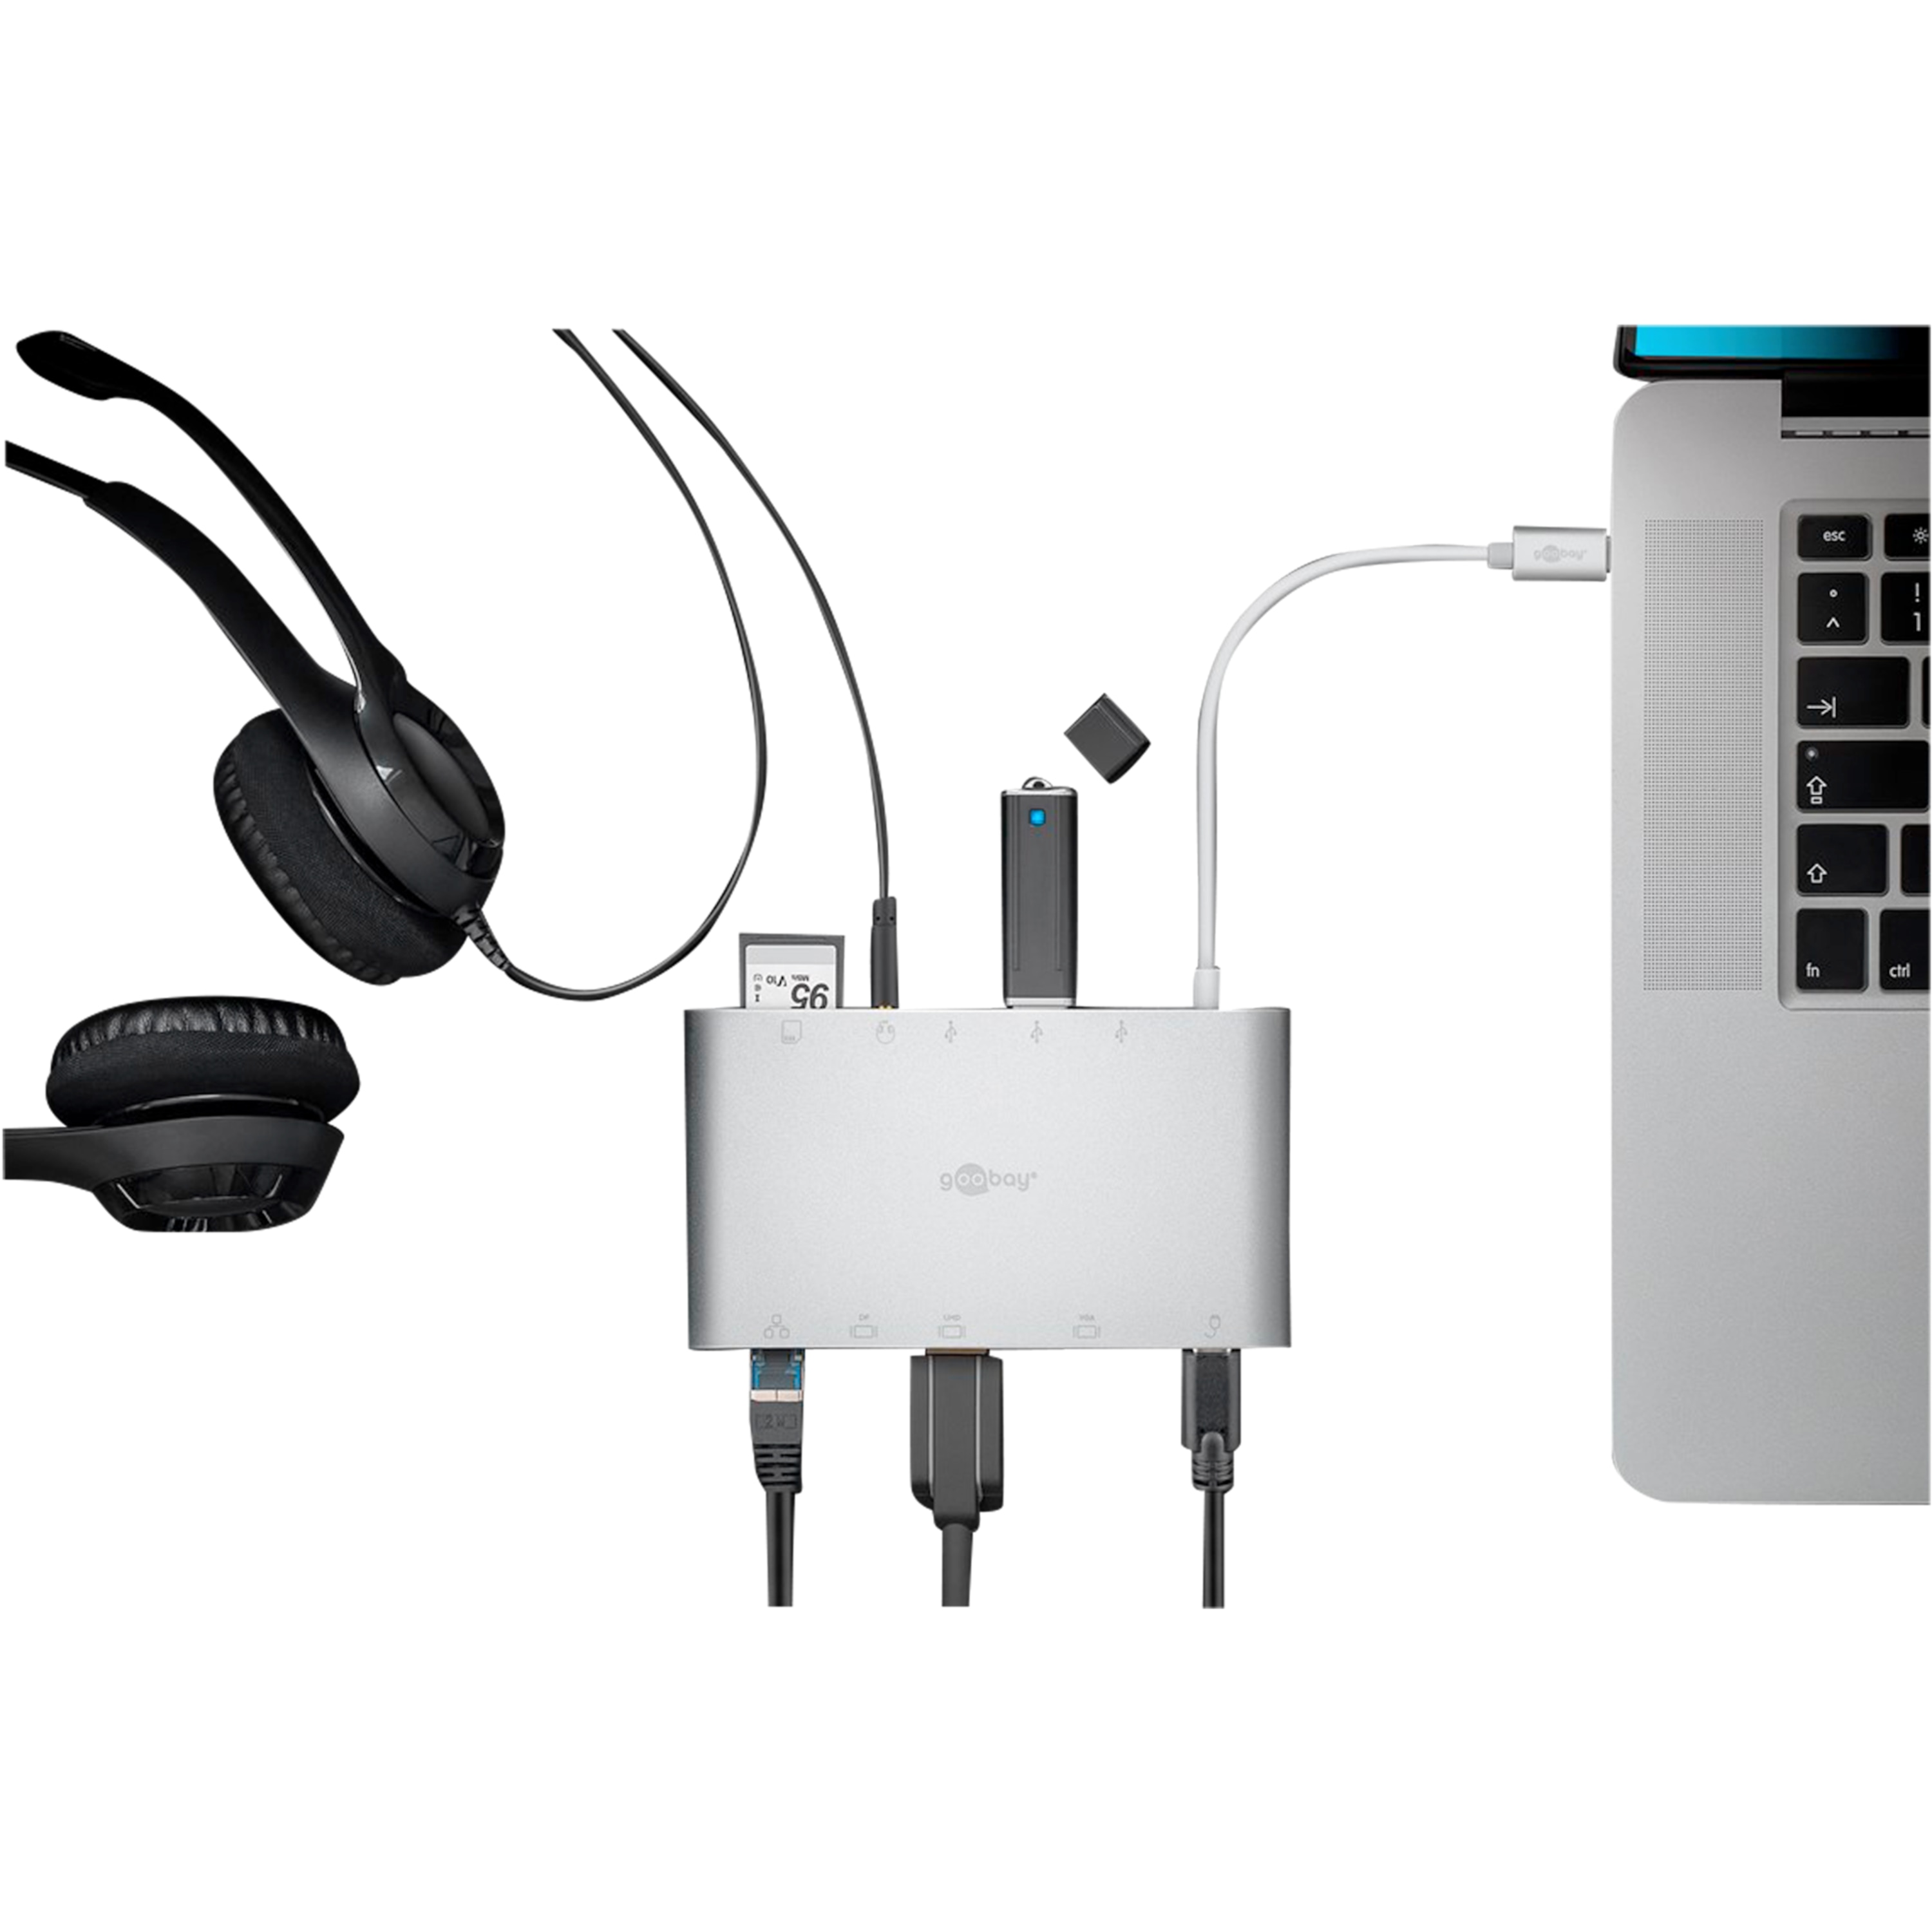 WENTRONIC USB-C™ Multiport-Adapter, erweitert ein USB-C™ Gerät um weitverbreitesten/gängisten Anschlüsse, perfekte All-in-One Lösung